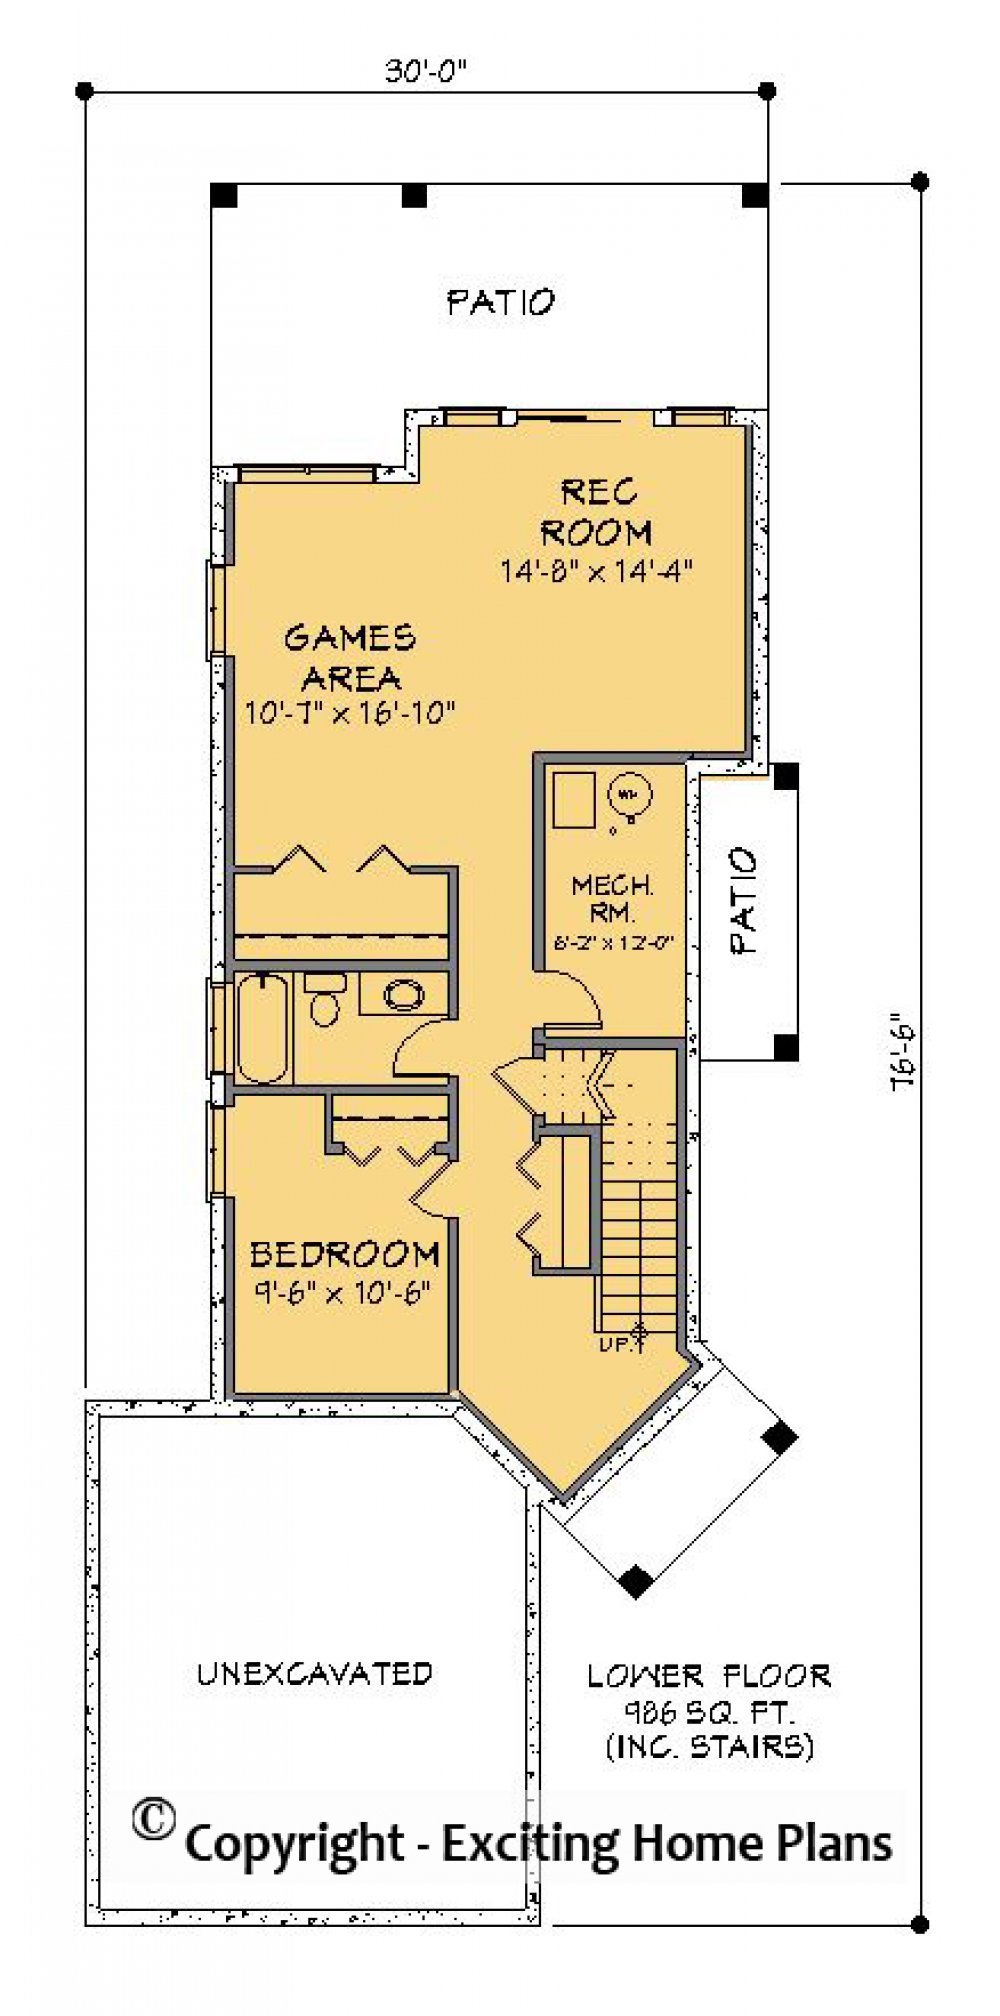 House Plan E1291-10 Lower Floor Plan